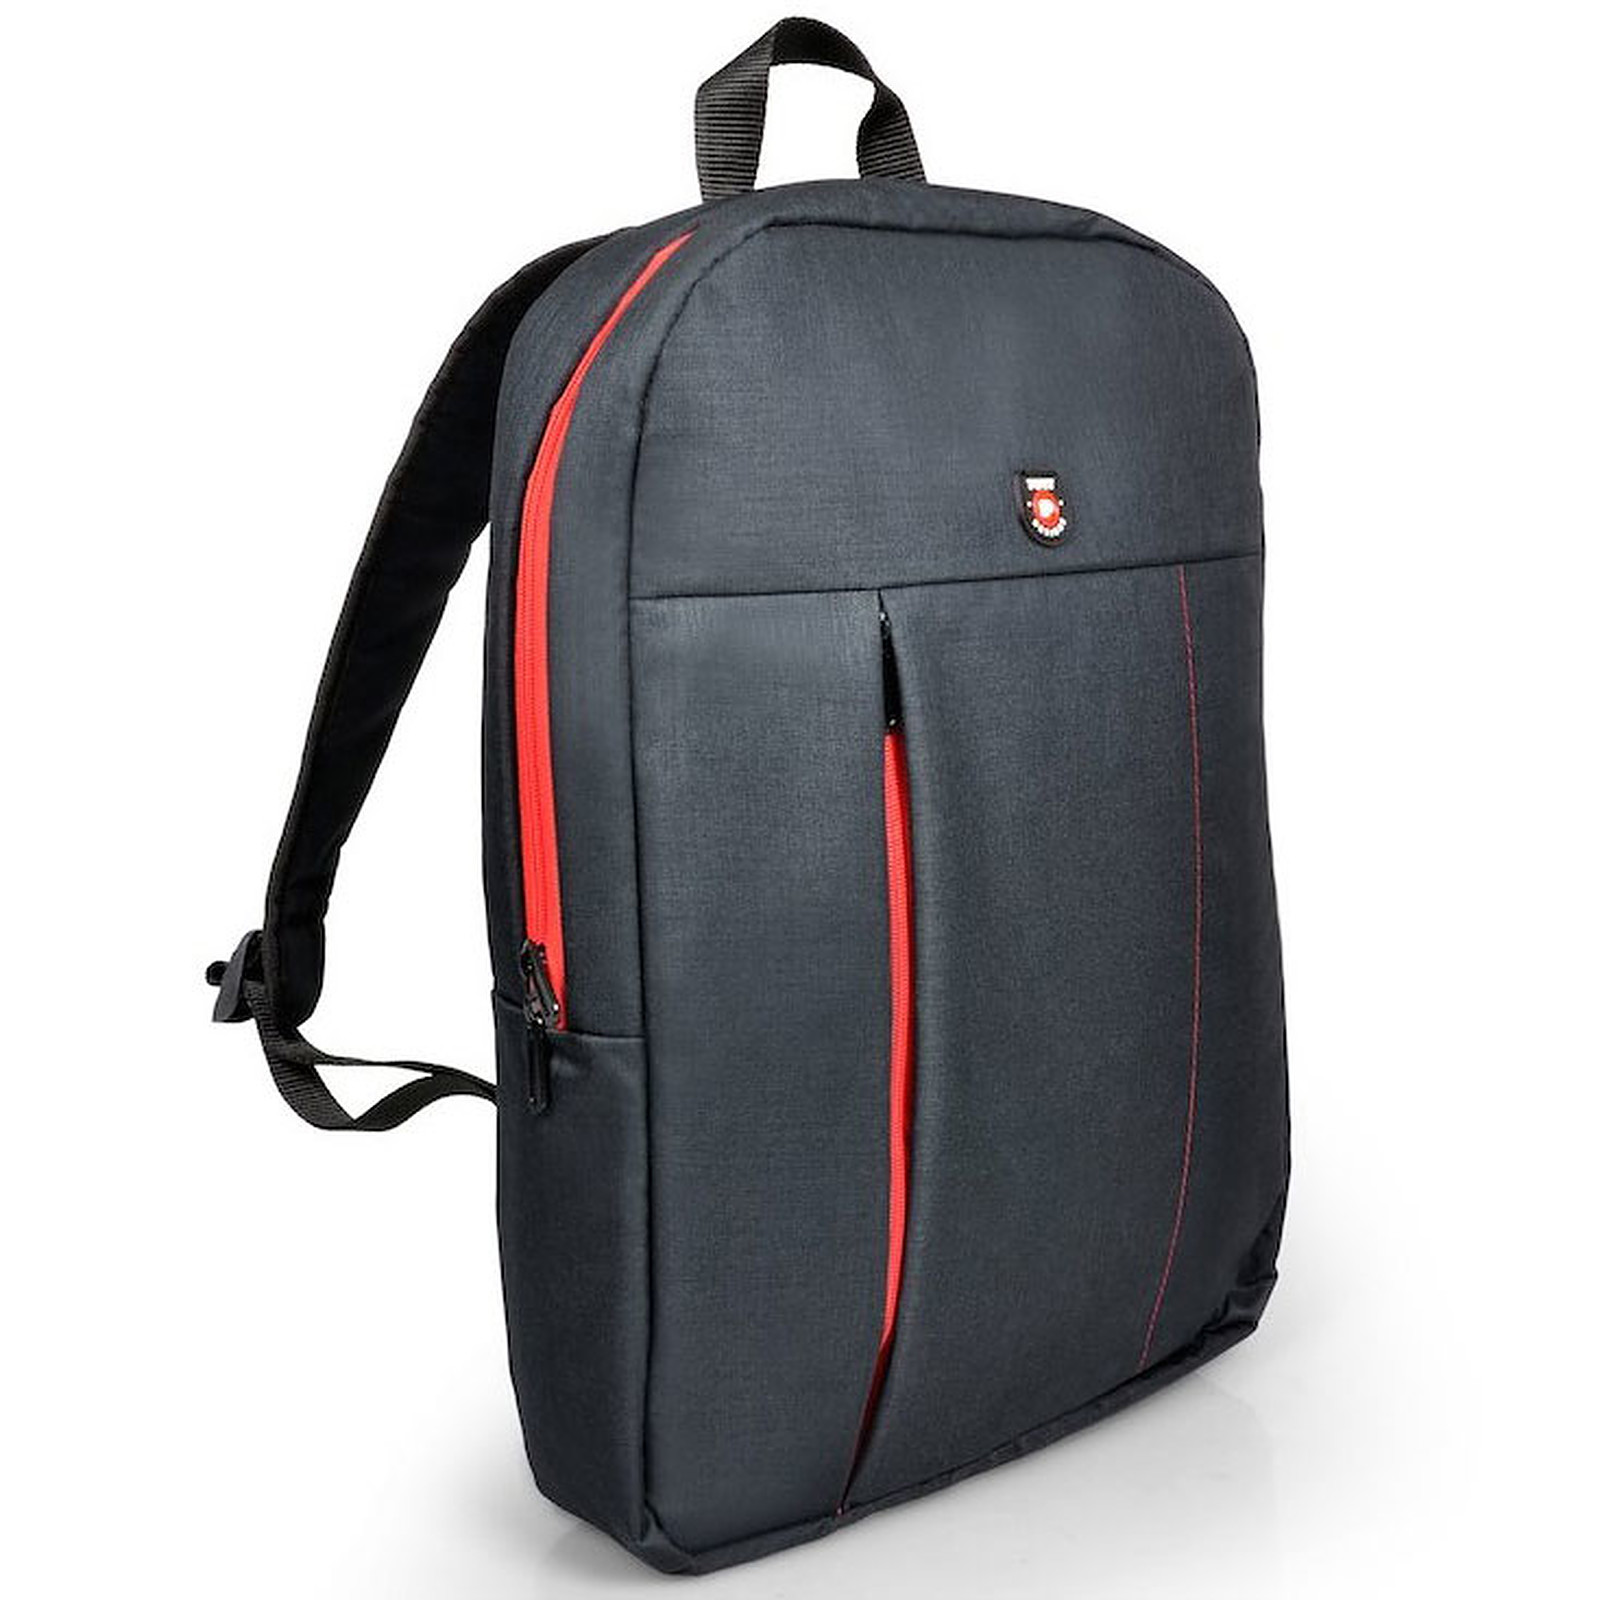 PORT Designs Portland Backpack - Sac, sacoche, housse PORT Designs